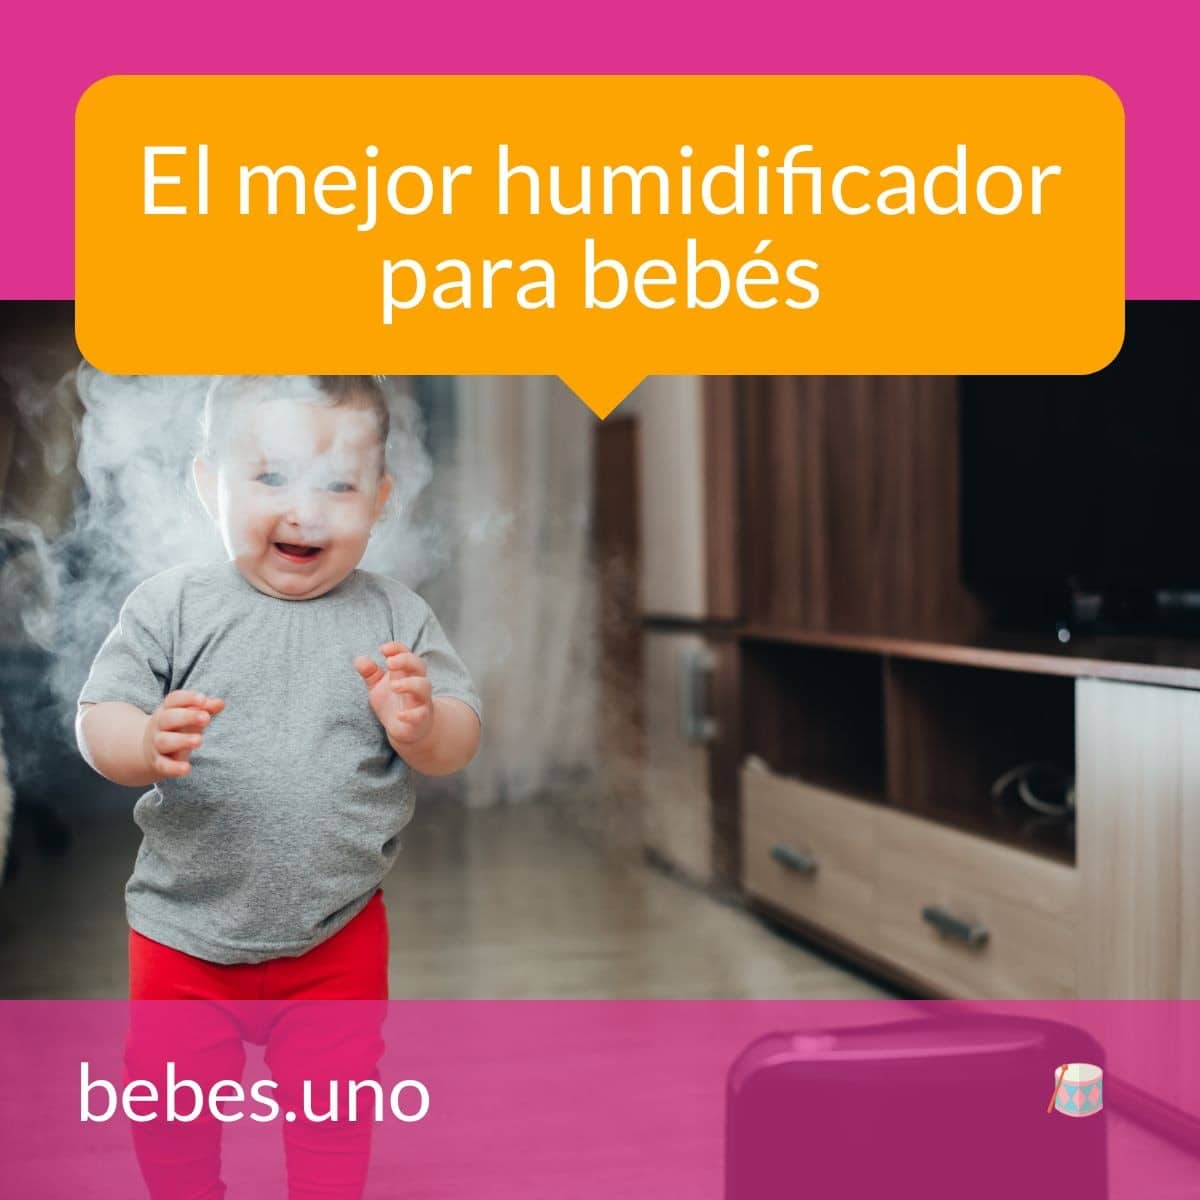 El mejor humidificador para bebés